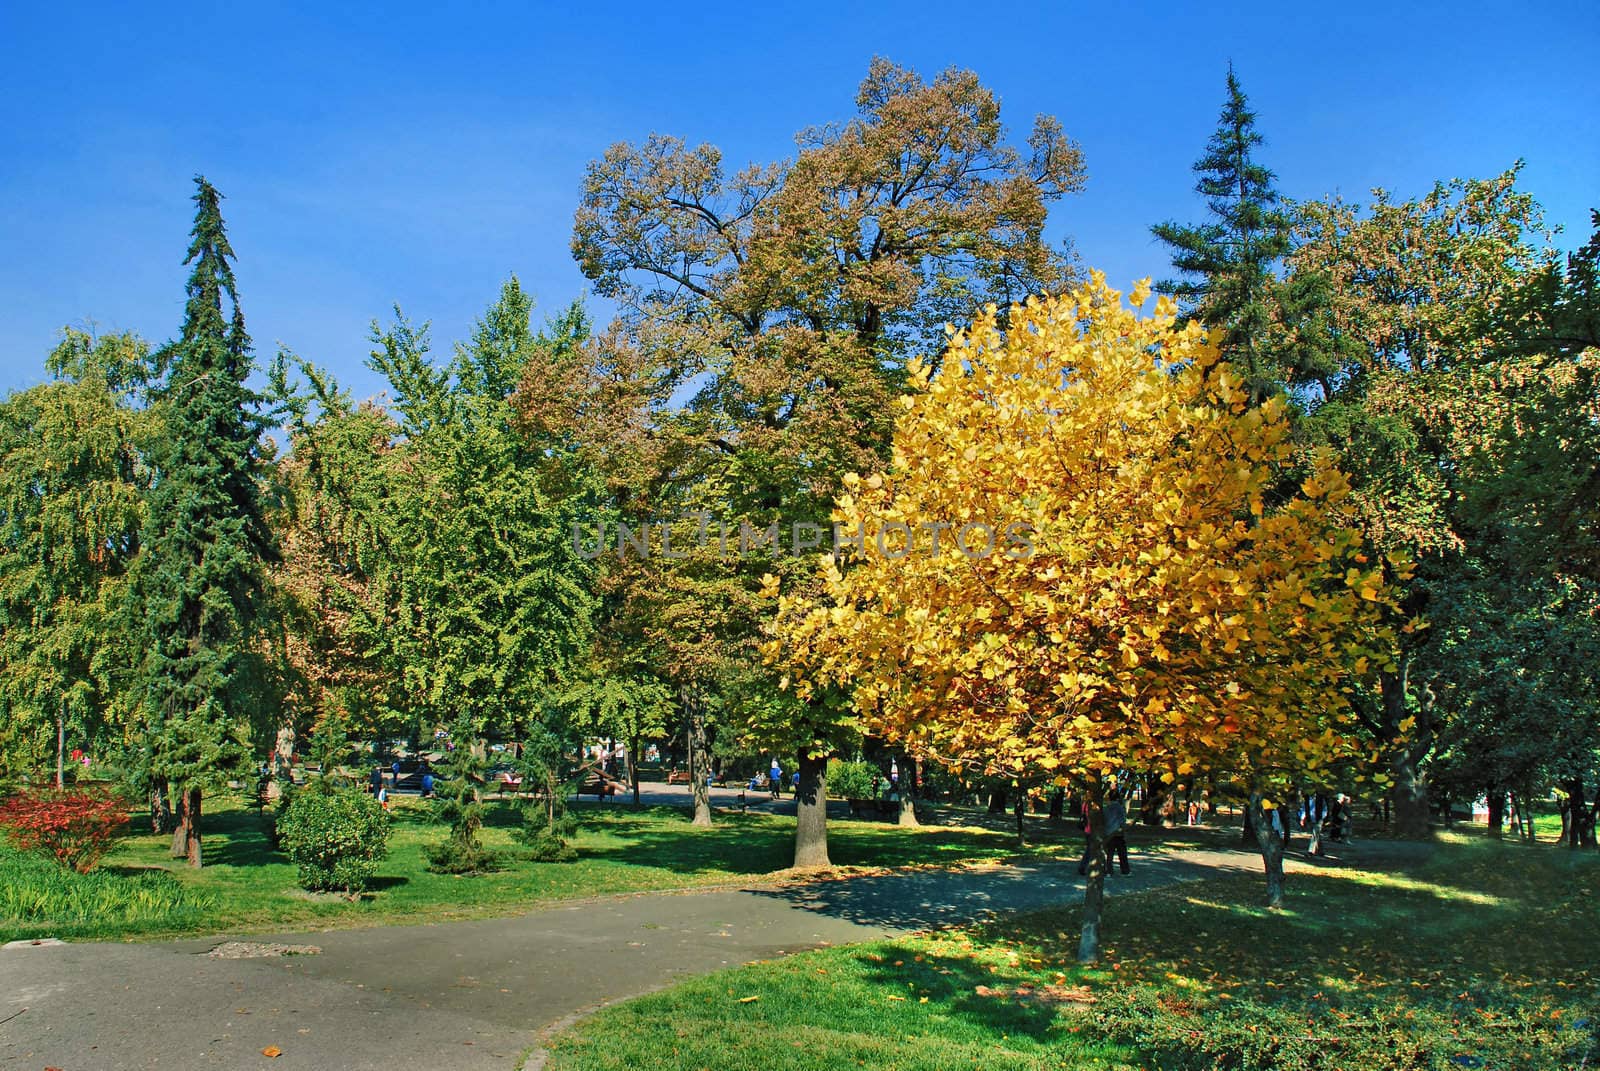 Autumn park landscape by simply